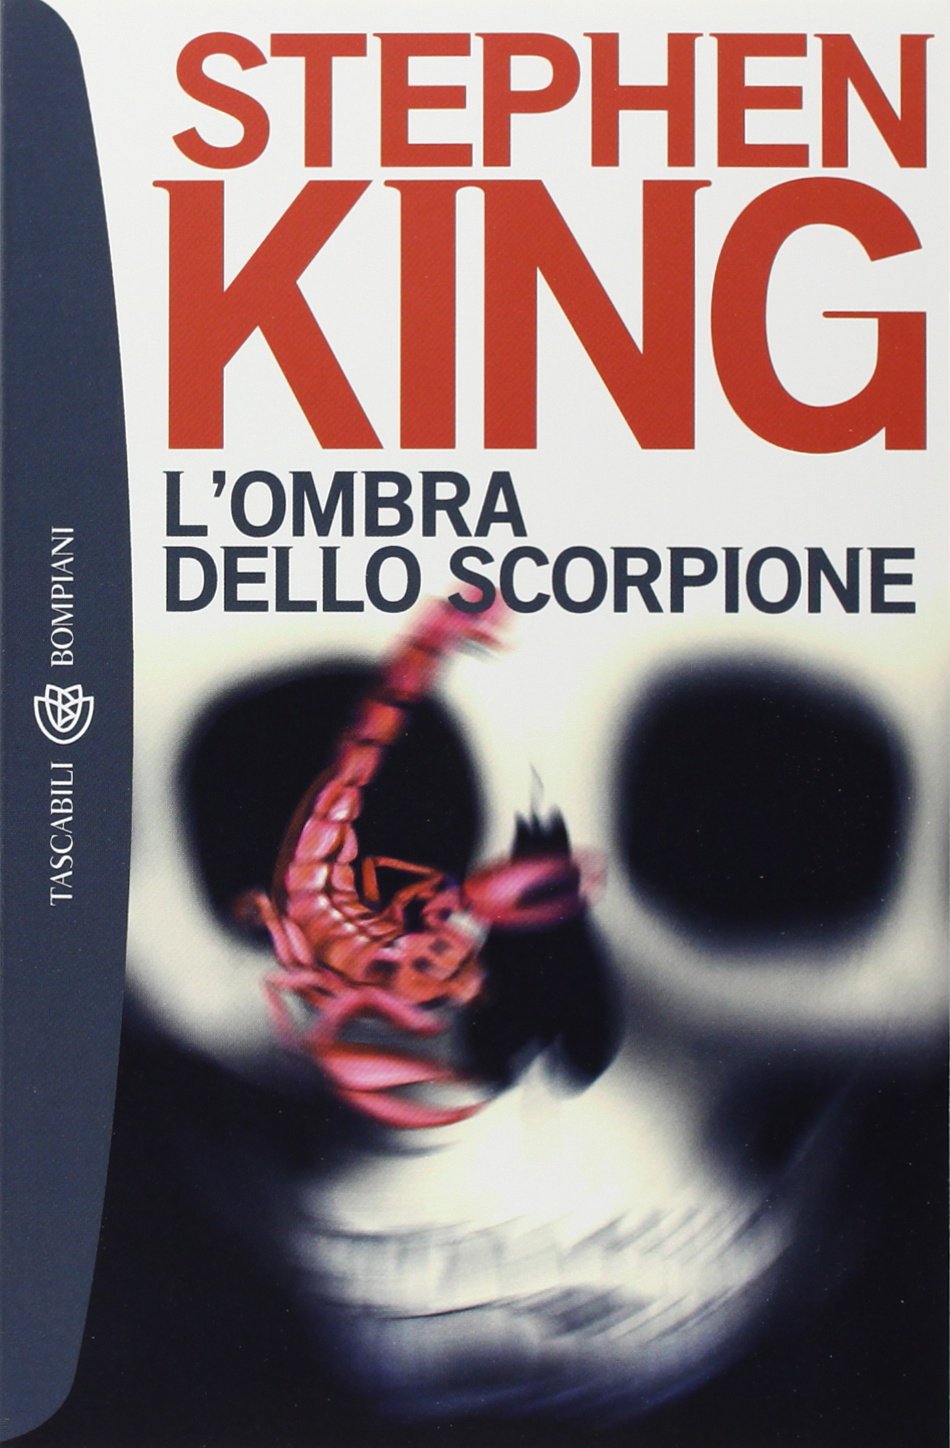 More about L'ombra dello scorpione